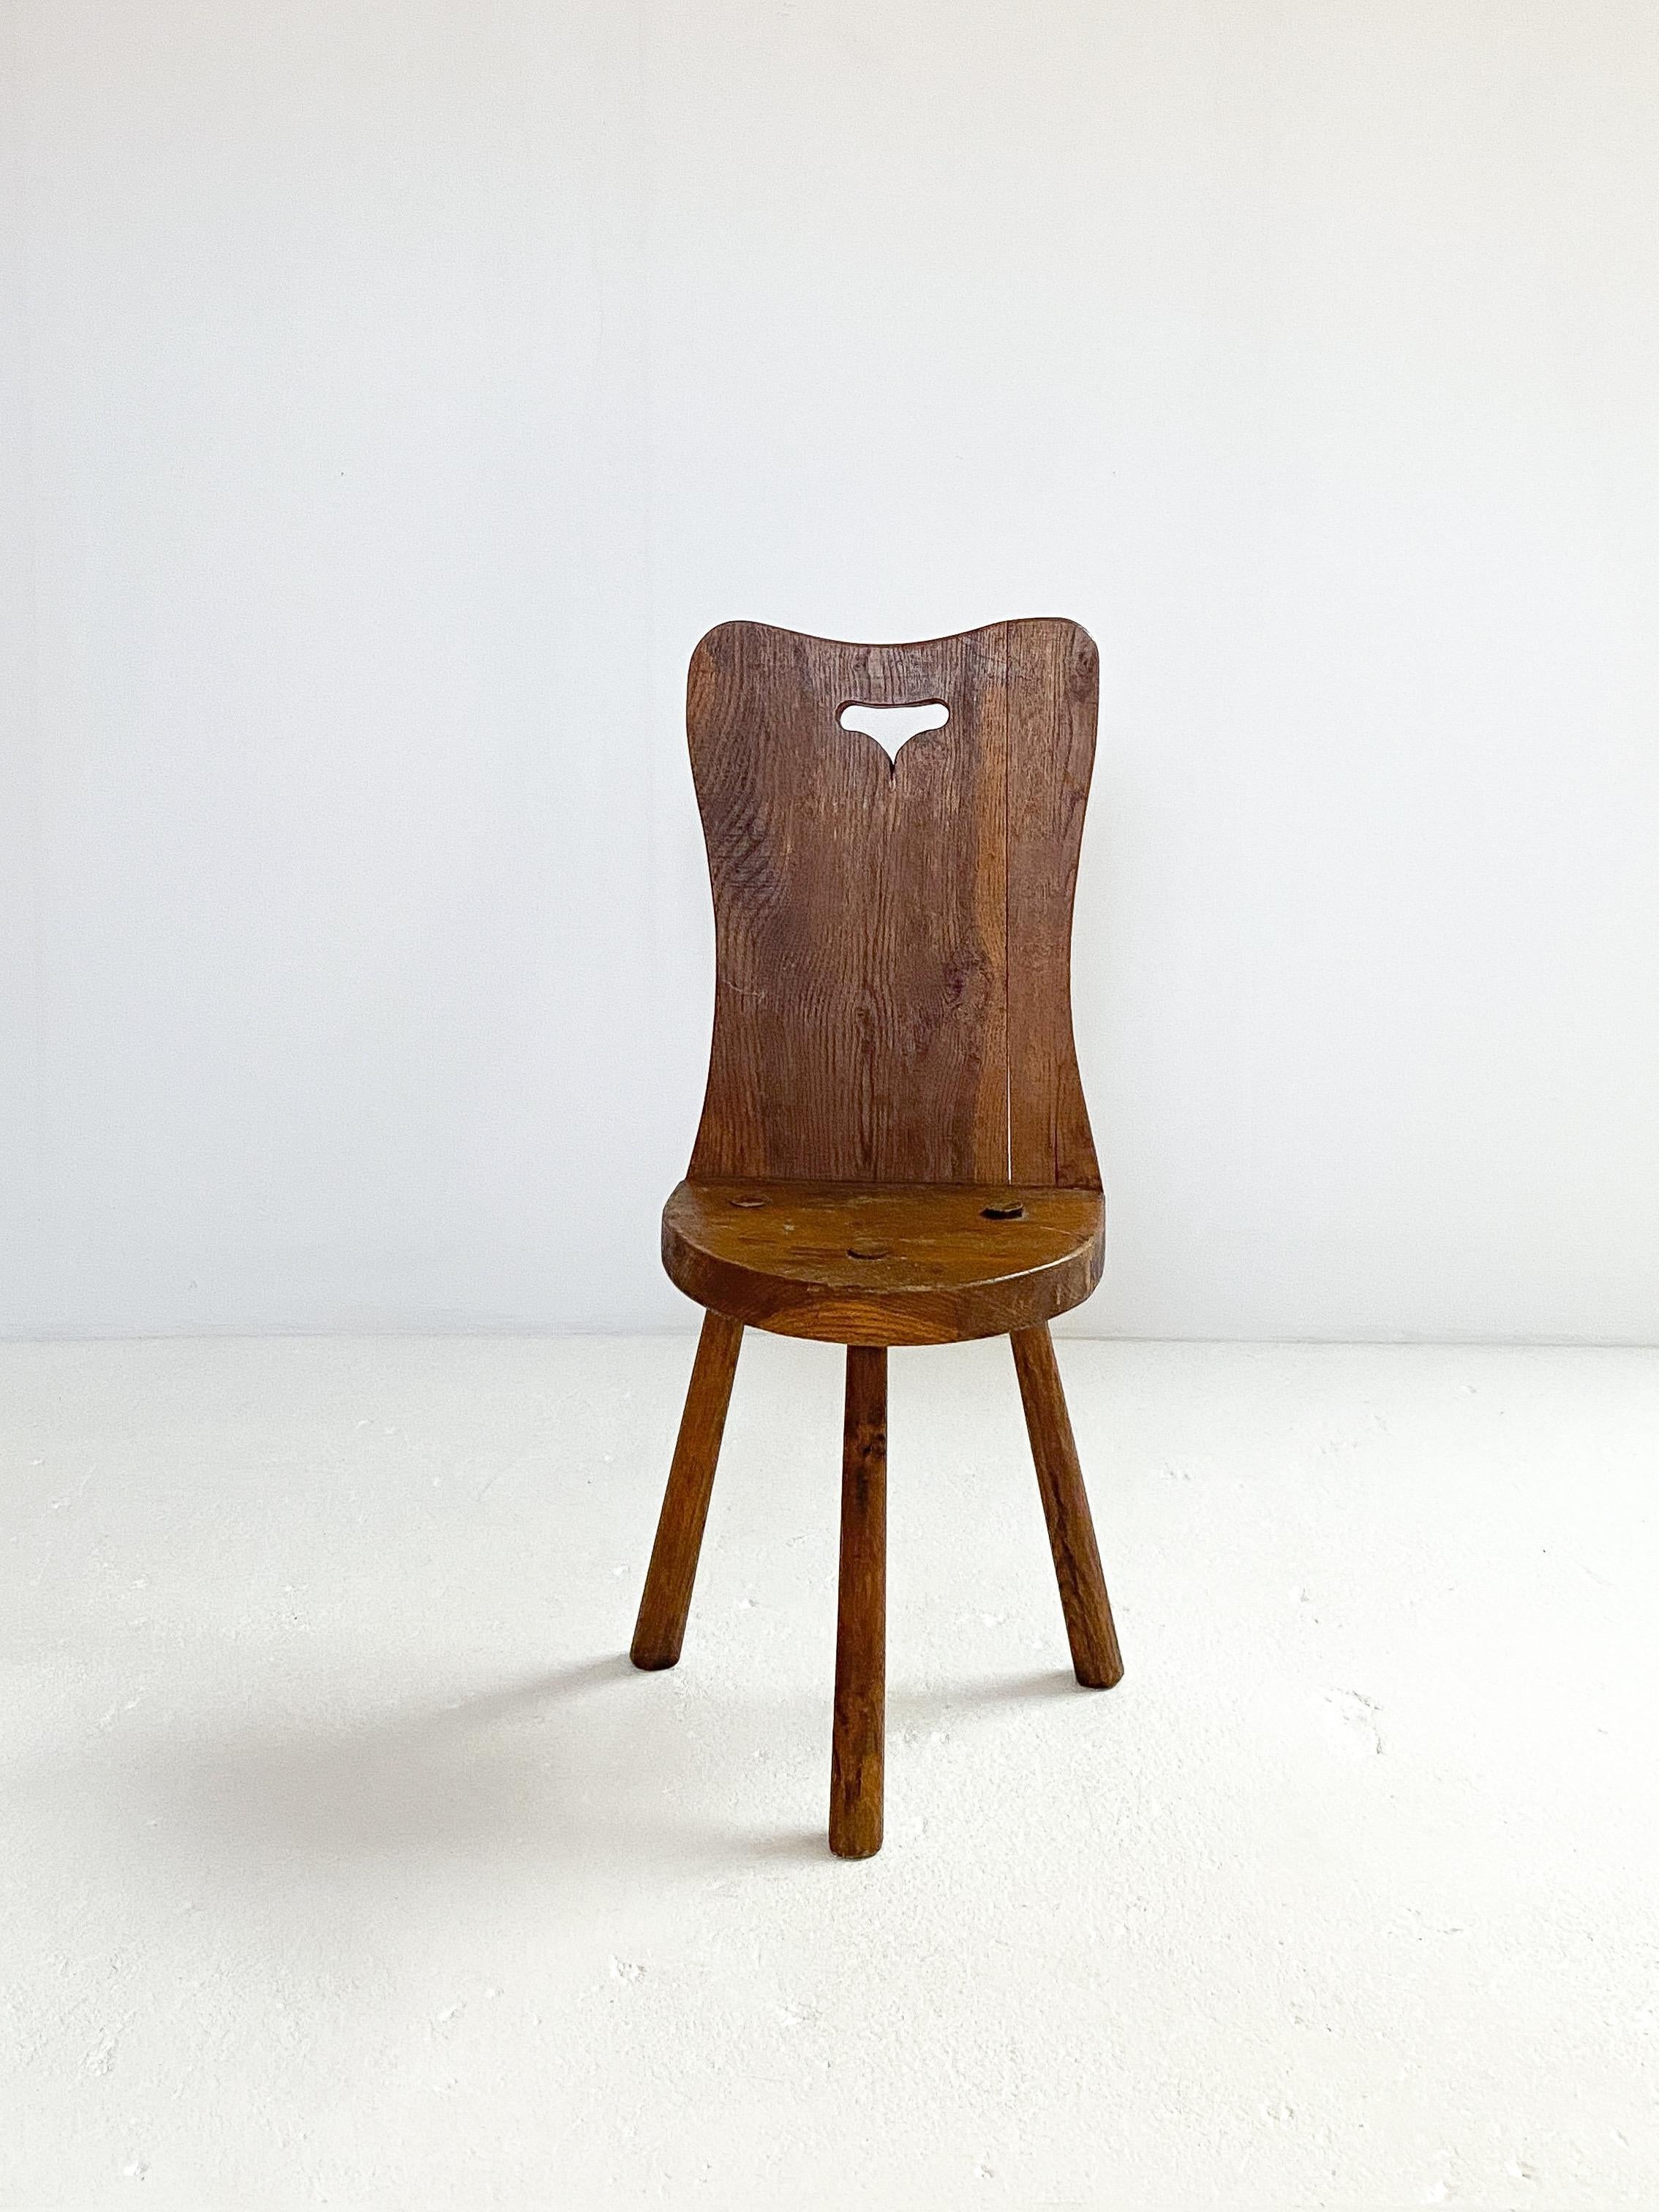 Brutalistischer dreibeiniger Holzhocker aus Frankreich, ca. 1950er Jahre. 
Massiver und klobiger Sitz mit stabilen Beinen. Dieser Hocker hat eine beeindruckende, hart geformte Rückenlehne mit einer halbmondförmigen Sitzfläche mit großem Charakter